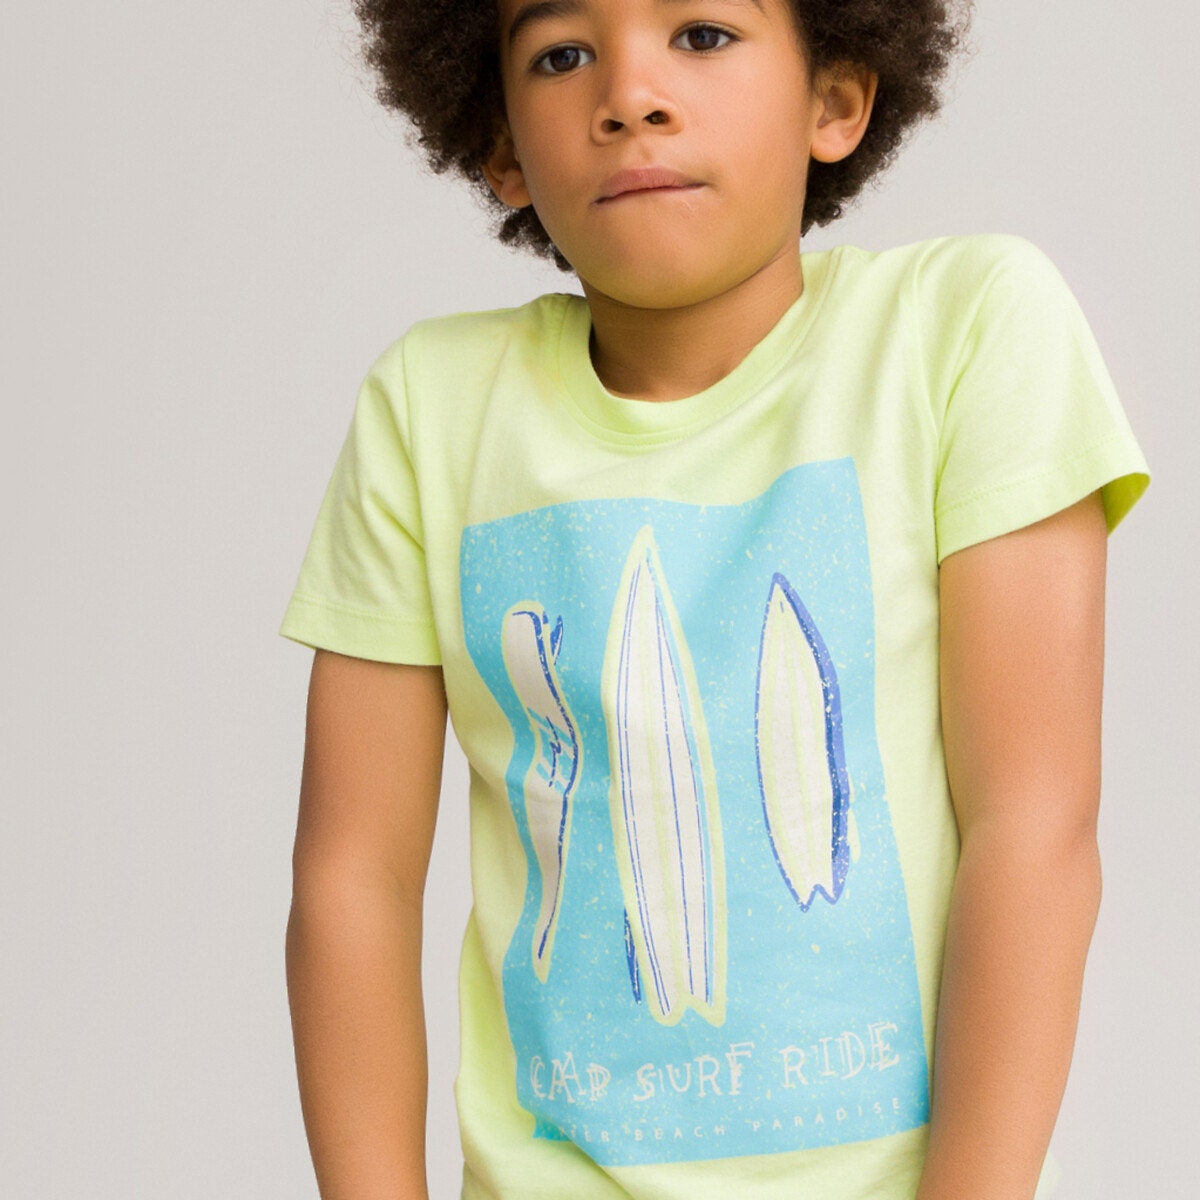 ΠΑΙΔΙ | Μπλούζες & Πουκάμισα | T-shirts Κοντομάνικο T-shirt από οργανικό βαμβάκι, 3-12 ετών